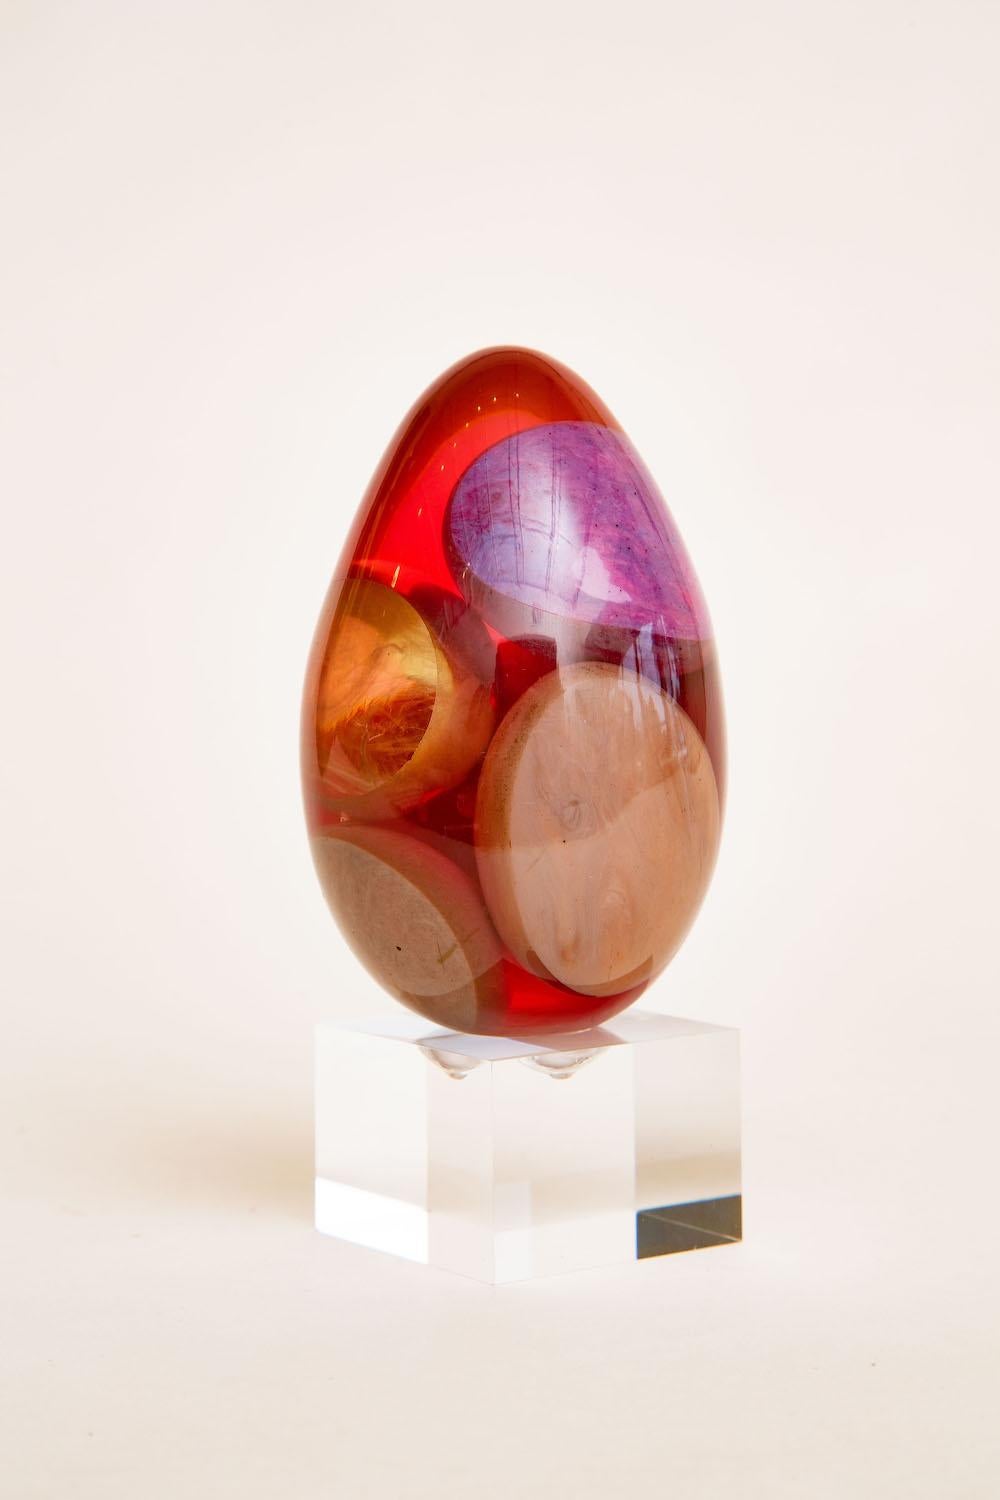 Cette merveilleuse sculpture ovoïde en résine a des morceaux de résine flottants à l'intérieur dans de grandes formes des couleurs de violet, tan, gris, jaune et translucide à l'intérieur de la résine rouge. Le rouge donne une couleur rouge magenta.